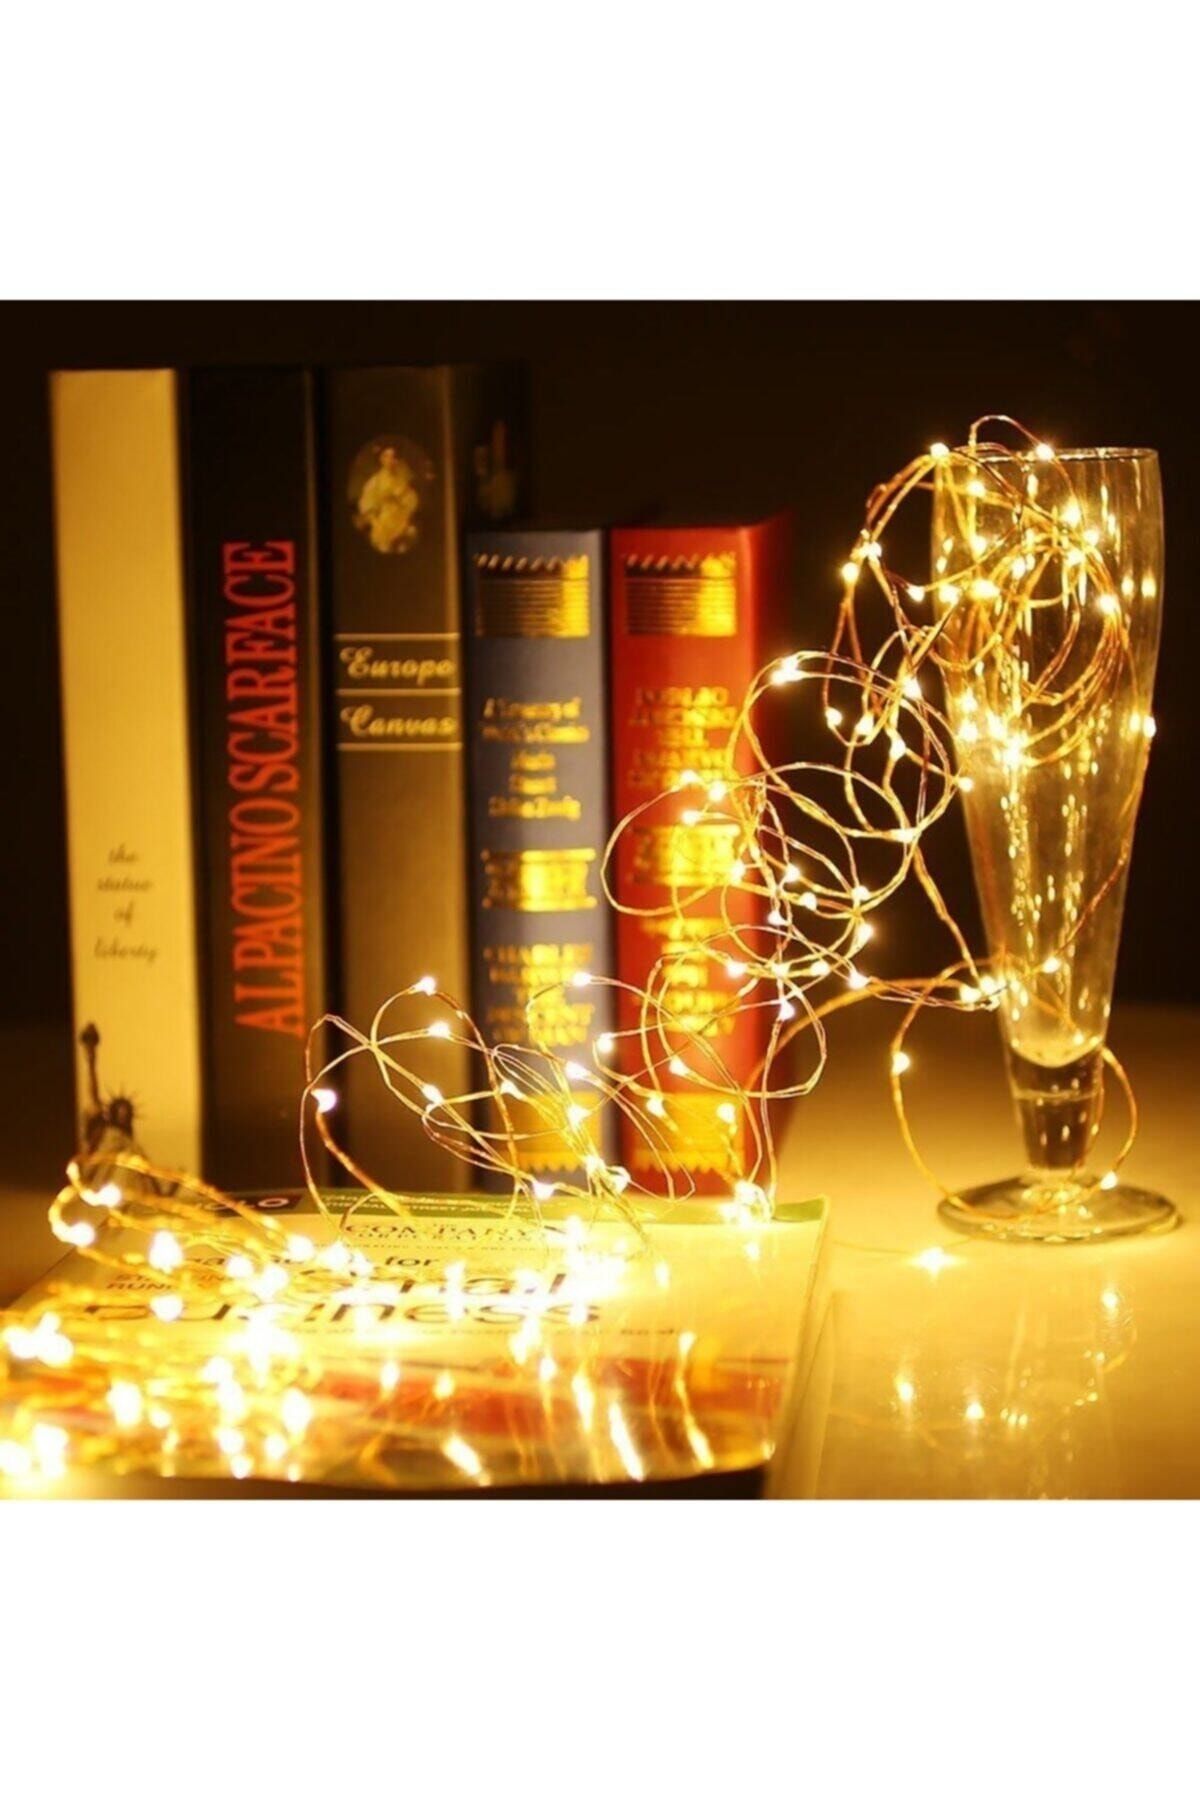 Onigi Tasarım Peri Led Işık - Dekoratif Led Işık - 10 Metre - Yılbaşı - Doğum Günü - Kutlama